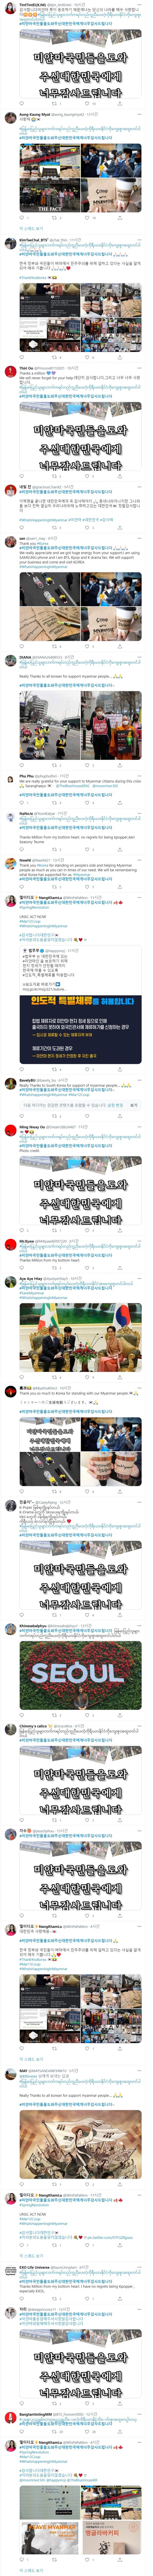 현재 미얀마인들이 트위터에서 달고있는 해시태그